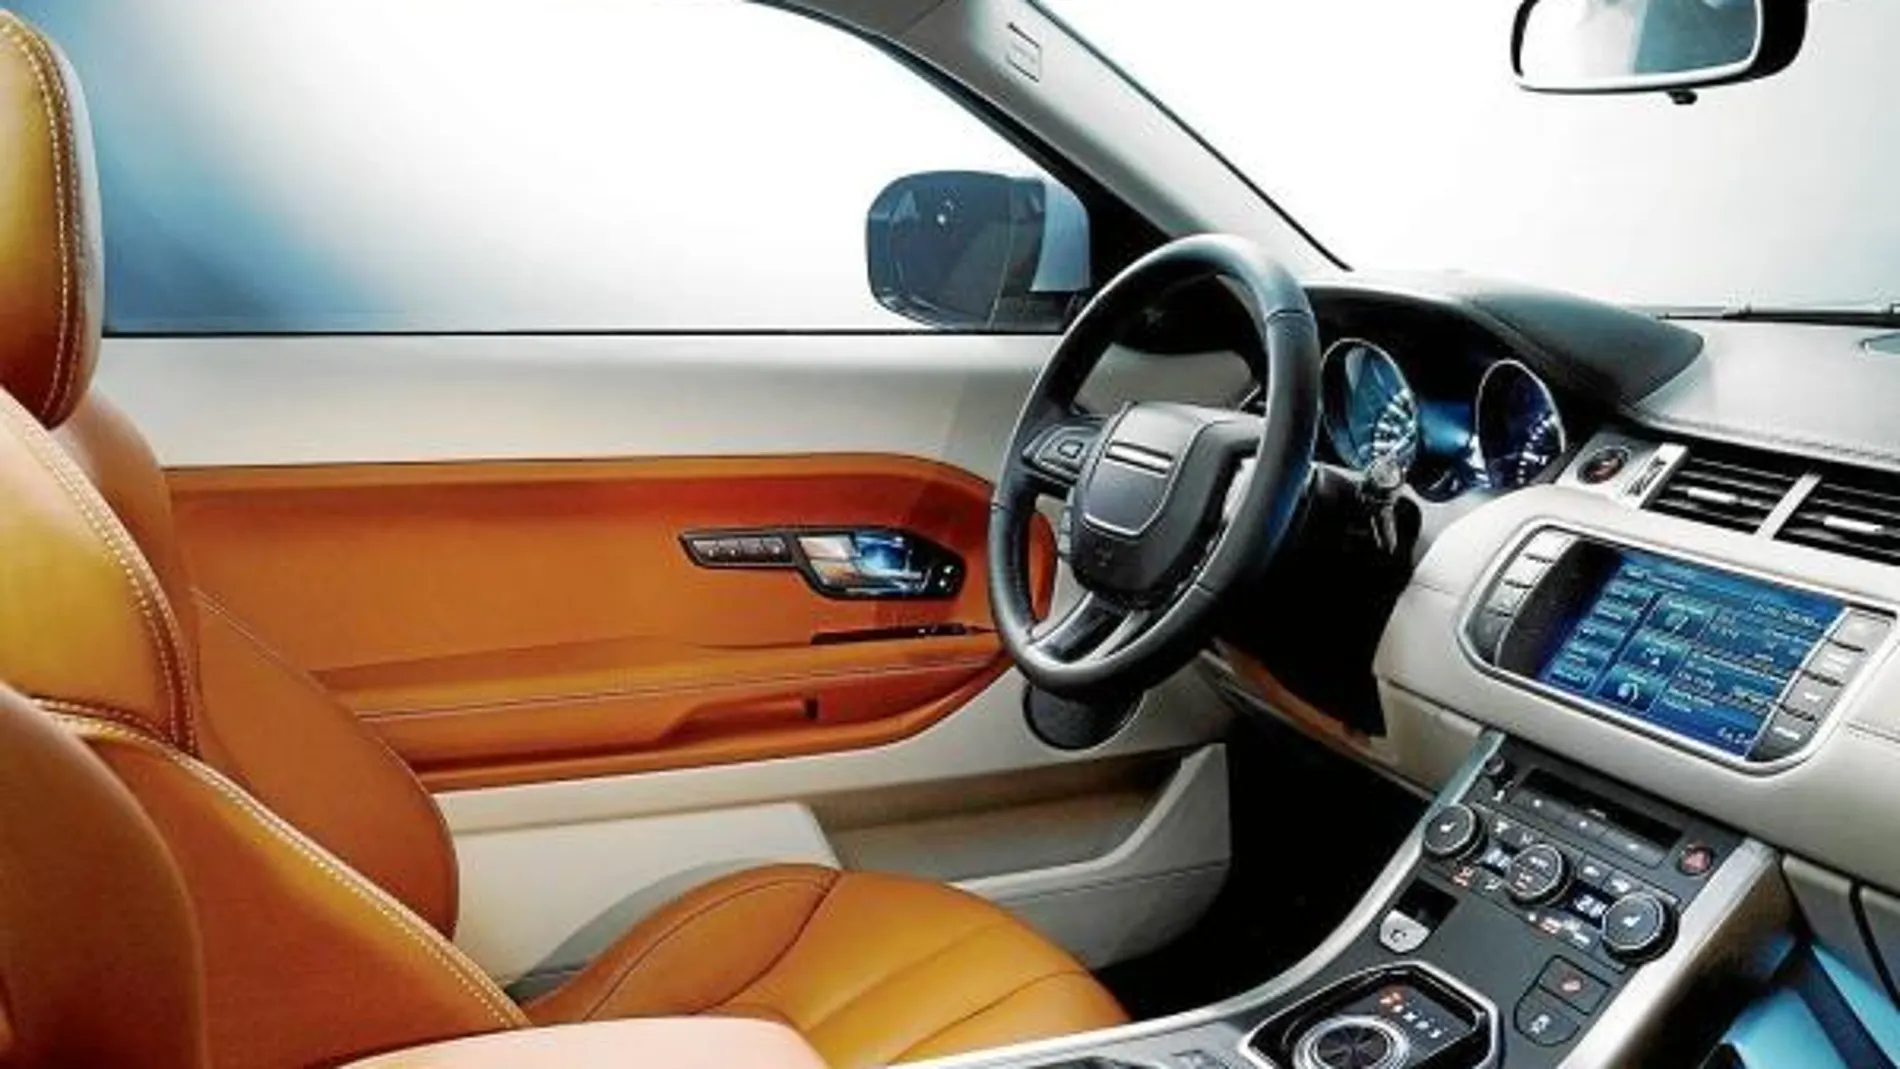 El interior del coche responde a la nueva tendencia de diseño que la marca incorporará en sus próximos modelos.